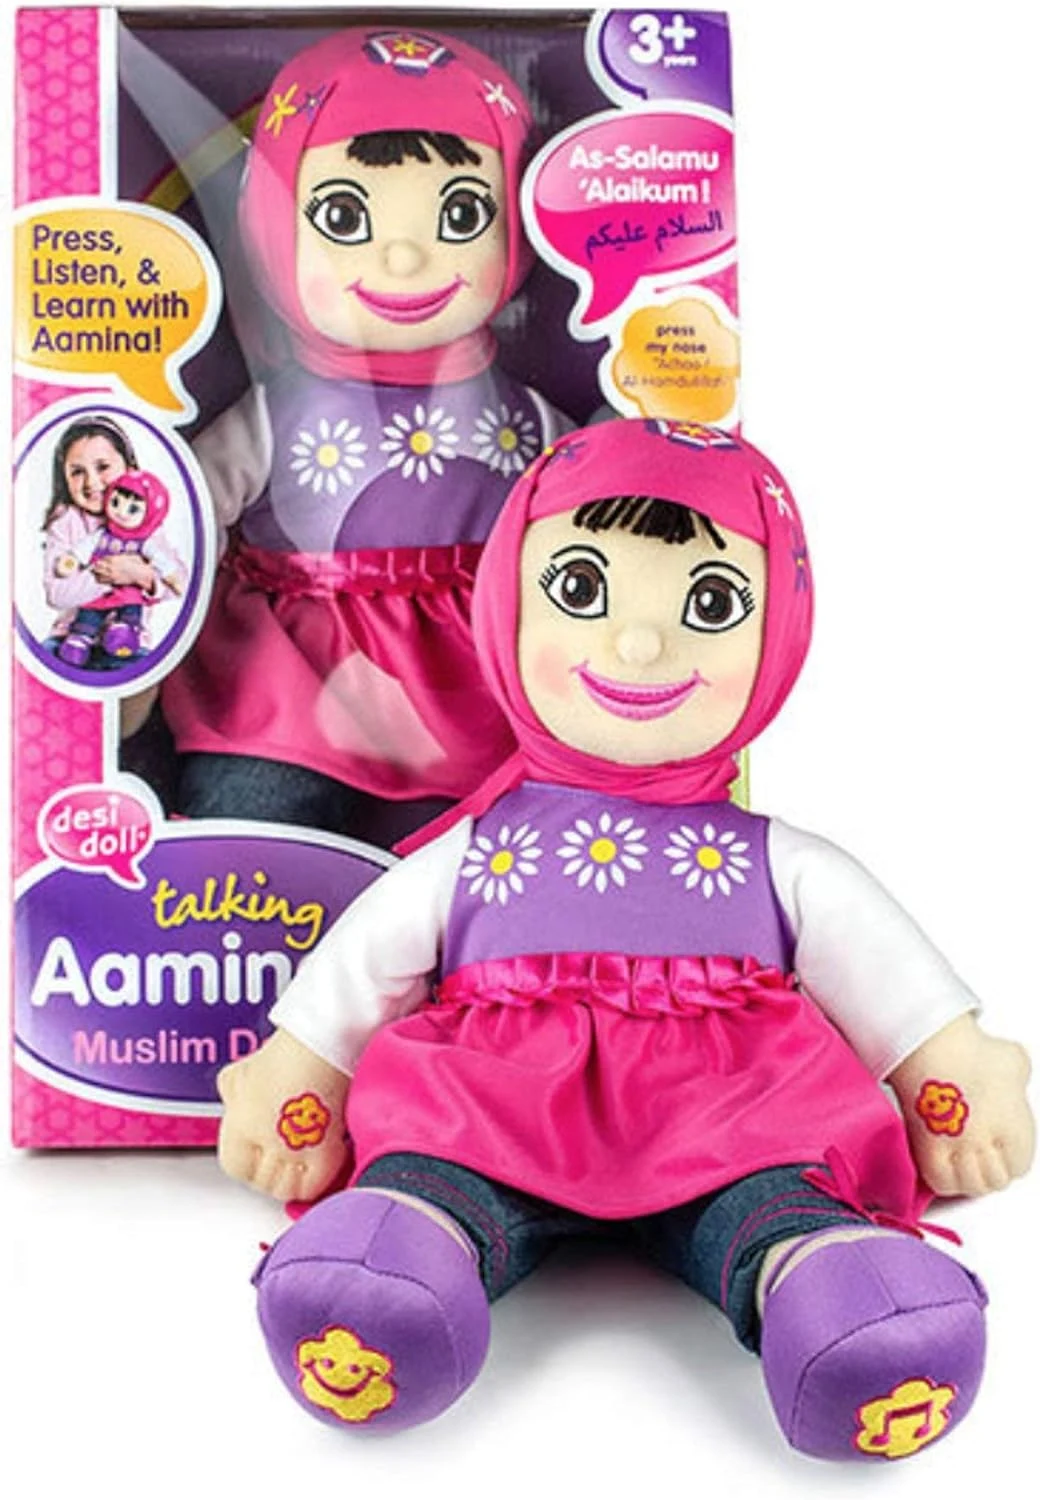 AAMINA Talking Muslim Doll